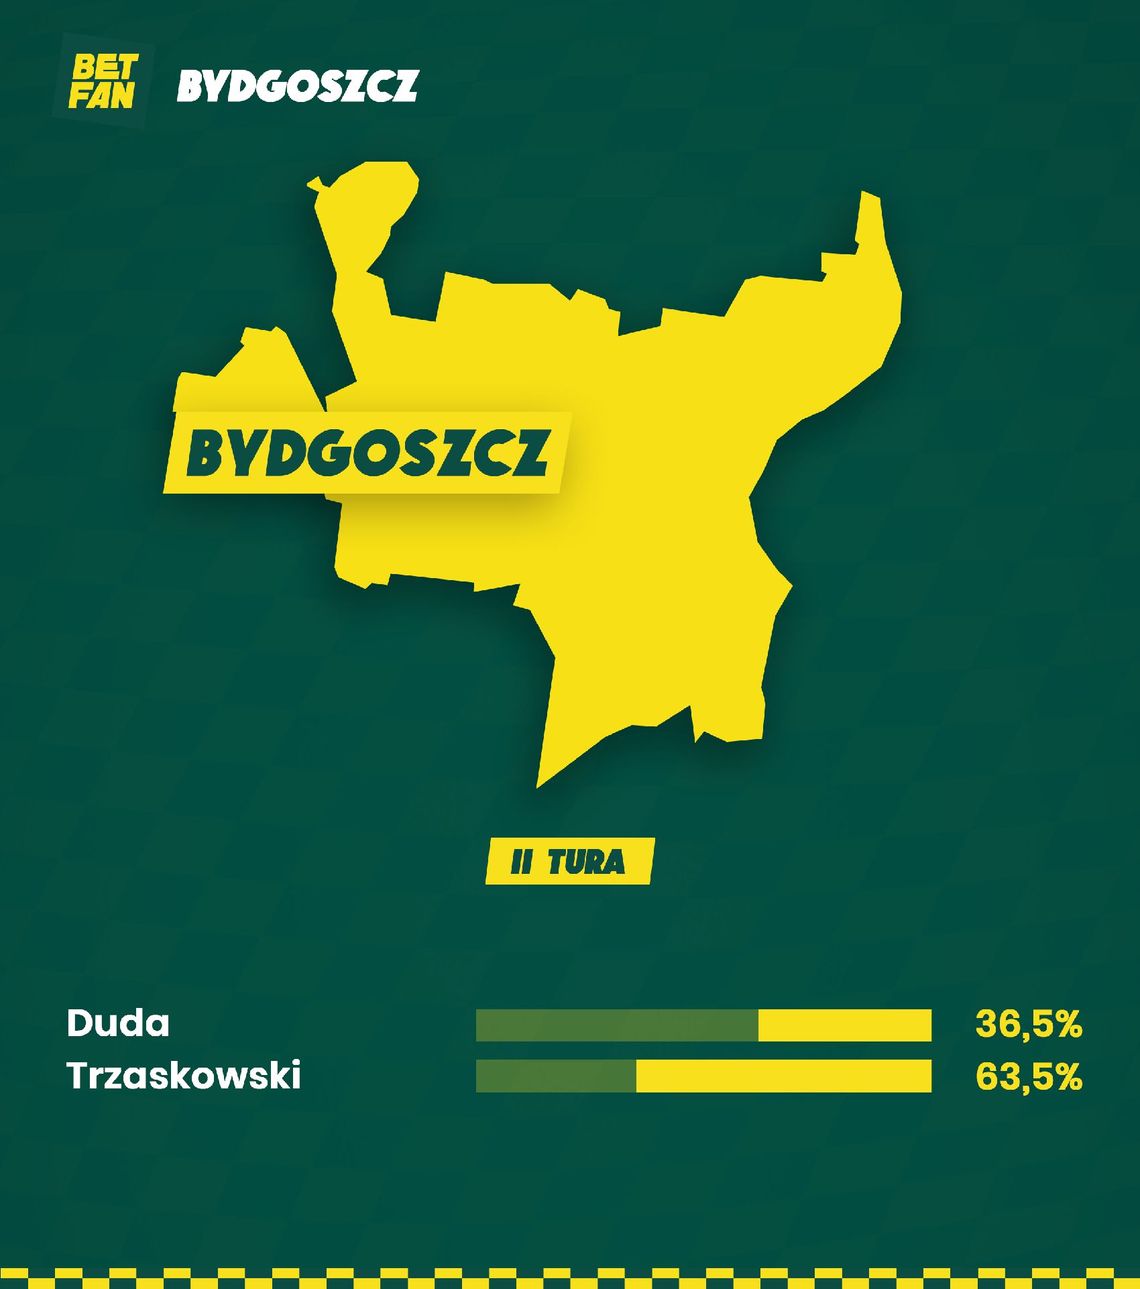 Analitycy BETFAN: W Kujawsko-Pomorskiem Trzaskowski z wynikiem 53,5% w II turze